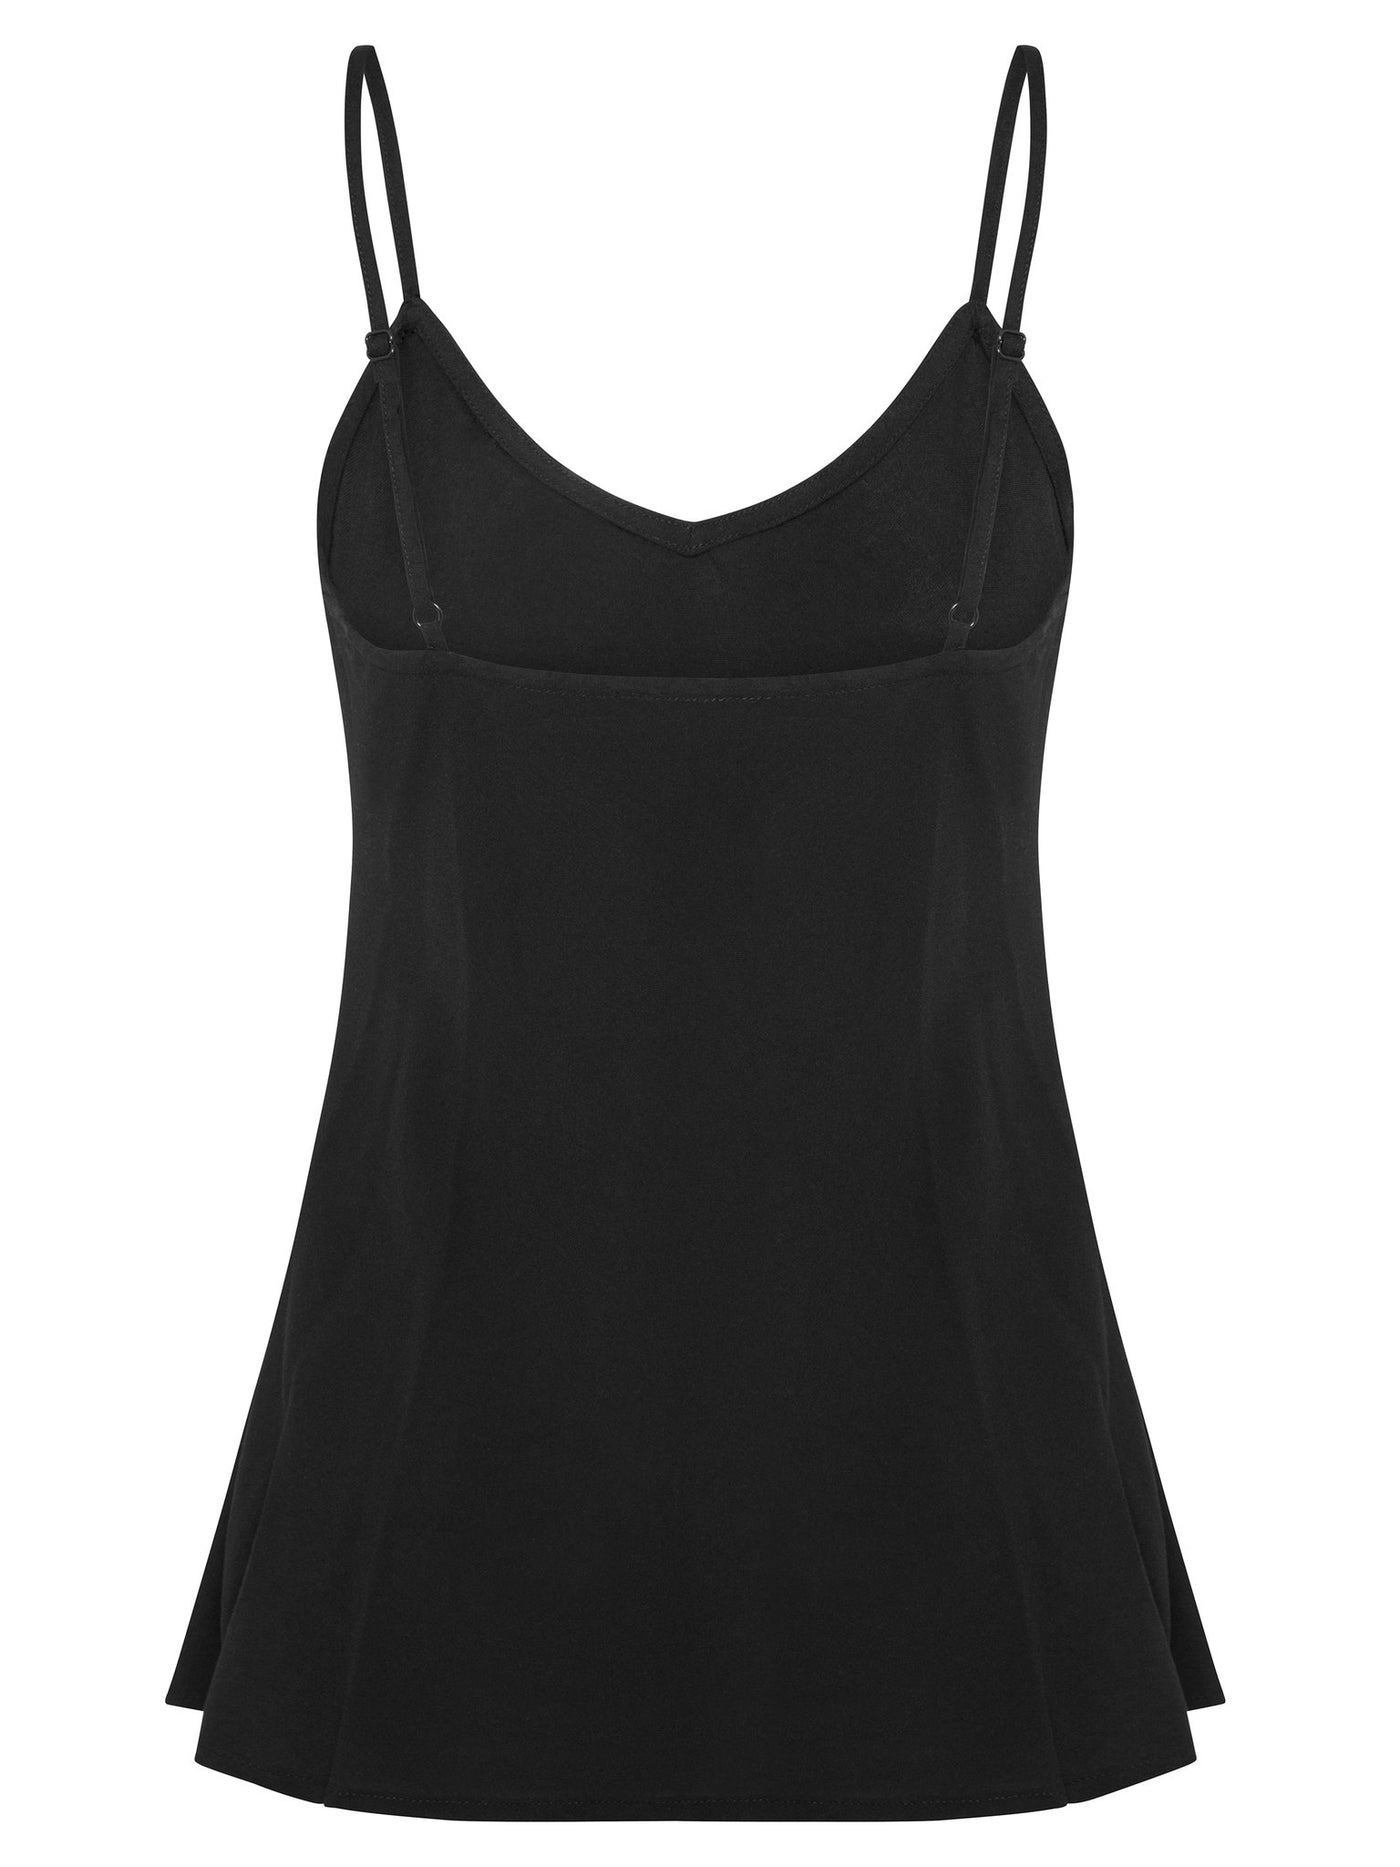 Black Bias Cut Camisole, Adjustable Straps, Upward Curved Hem At Back, Side Splits (5cm), 100% rayon, designed in Australia